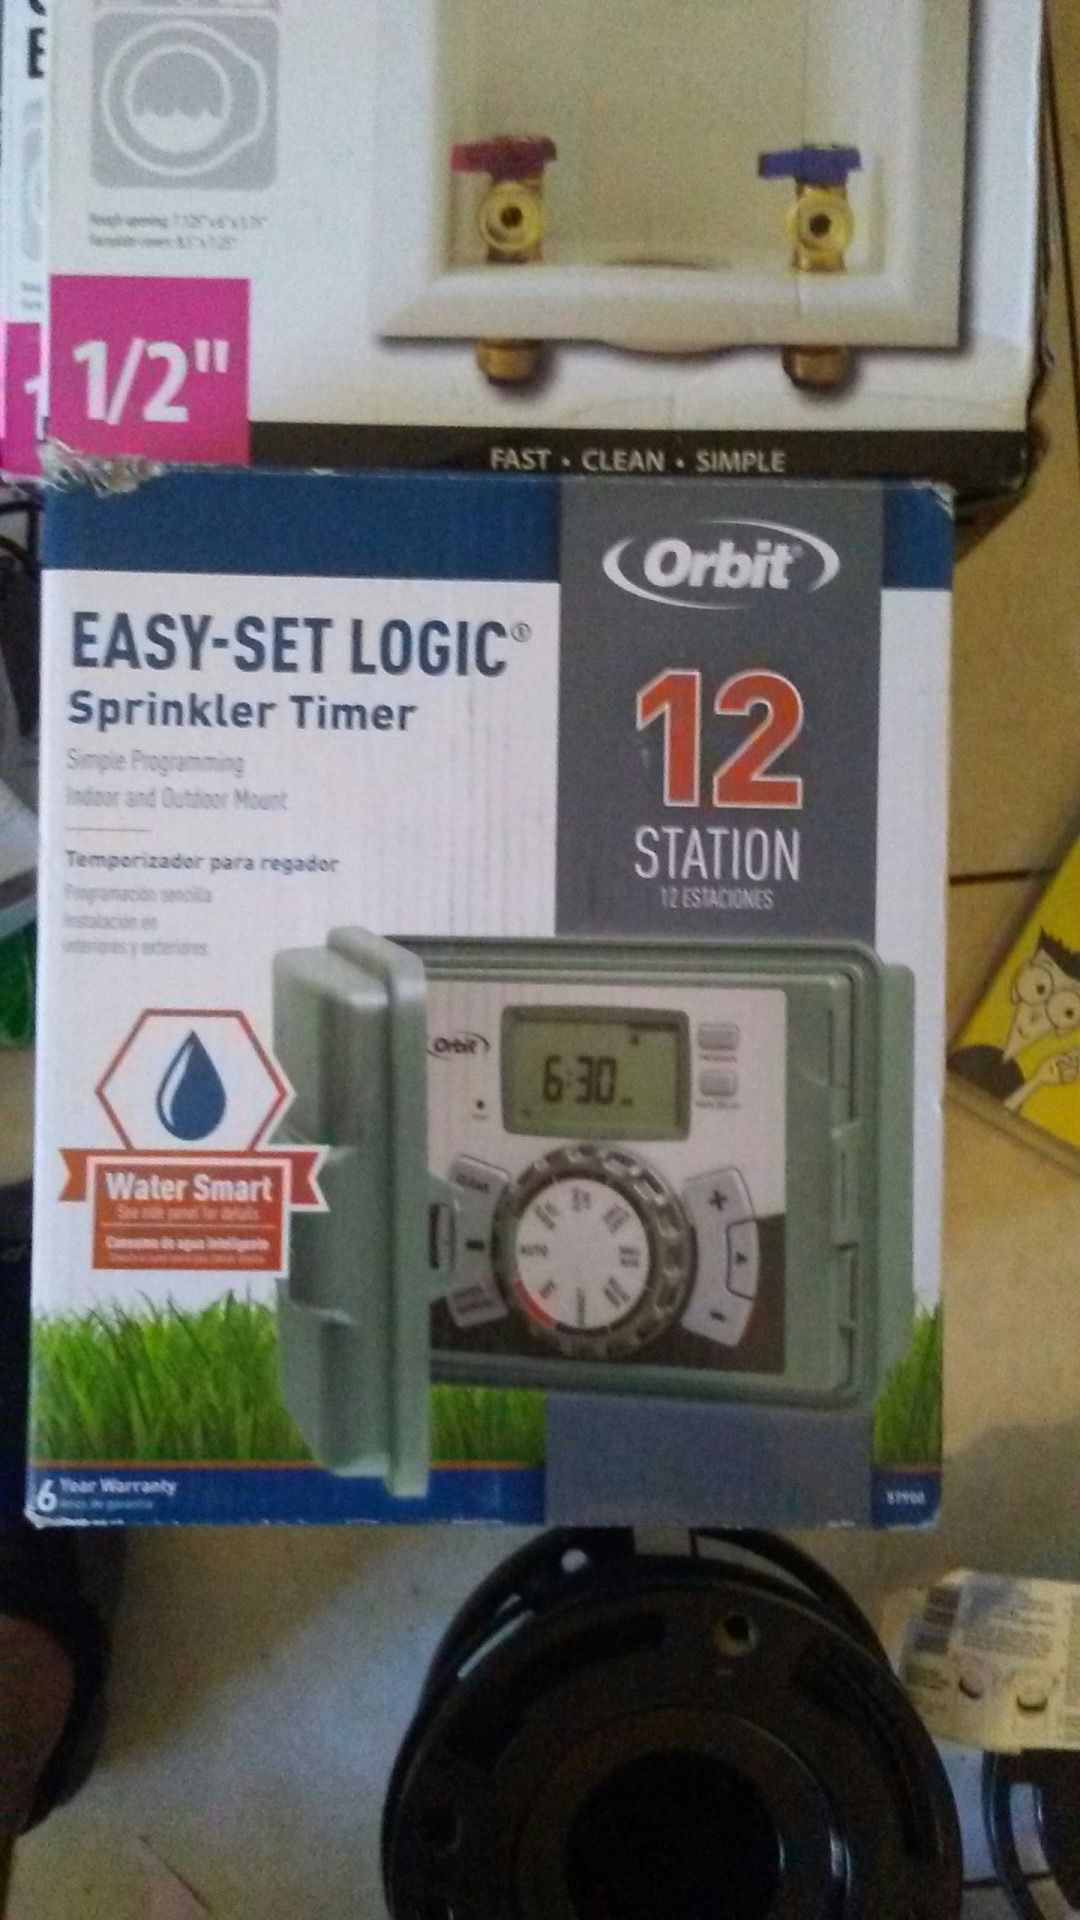 Easy set logic sprinkler timer